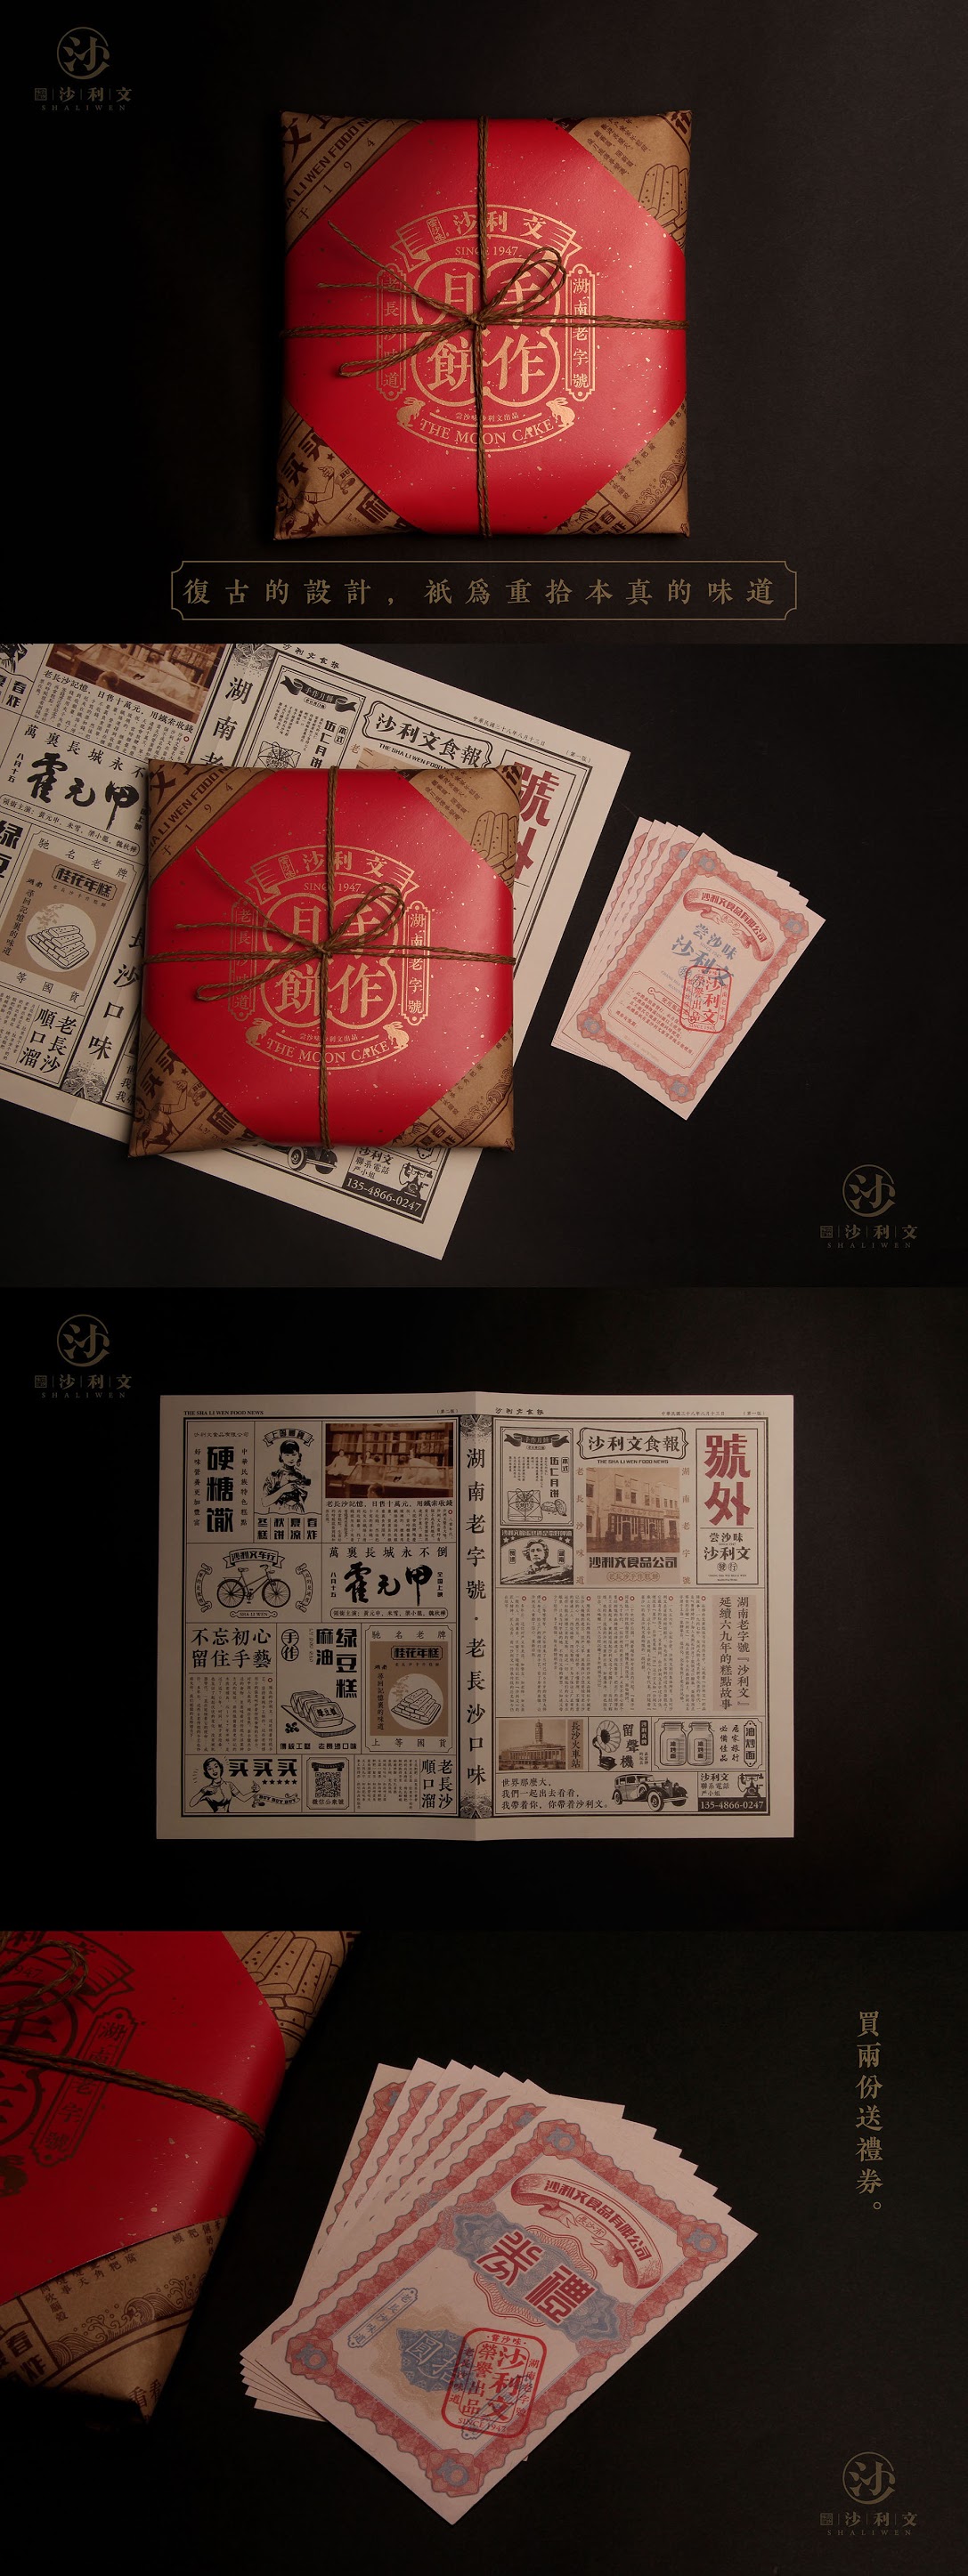 Sa Li Wen(沙利文)月饼包装设计